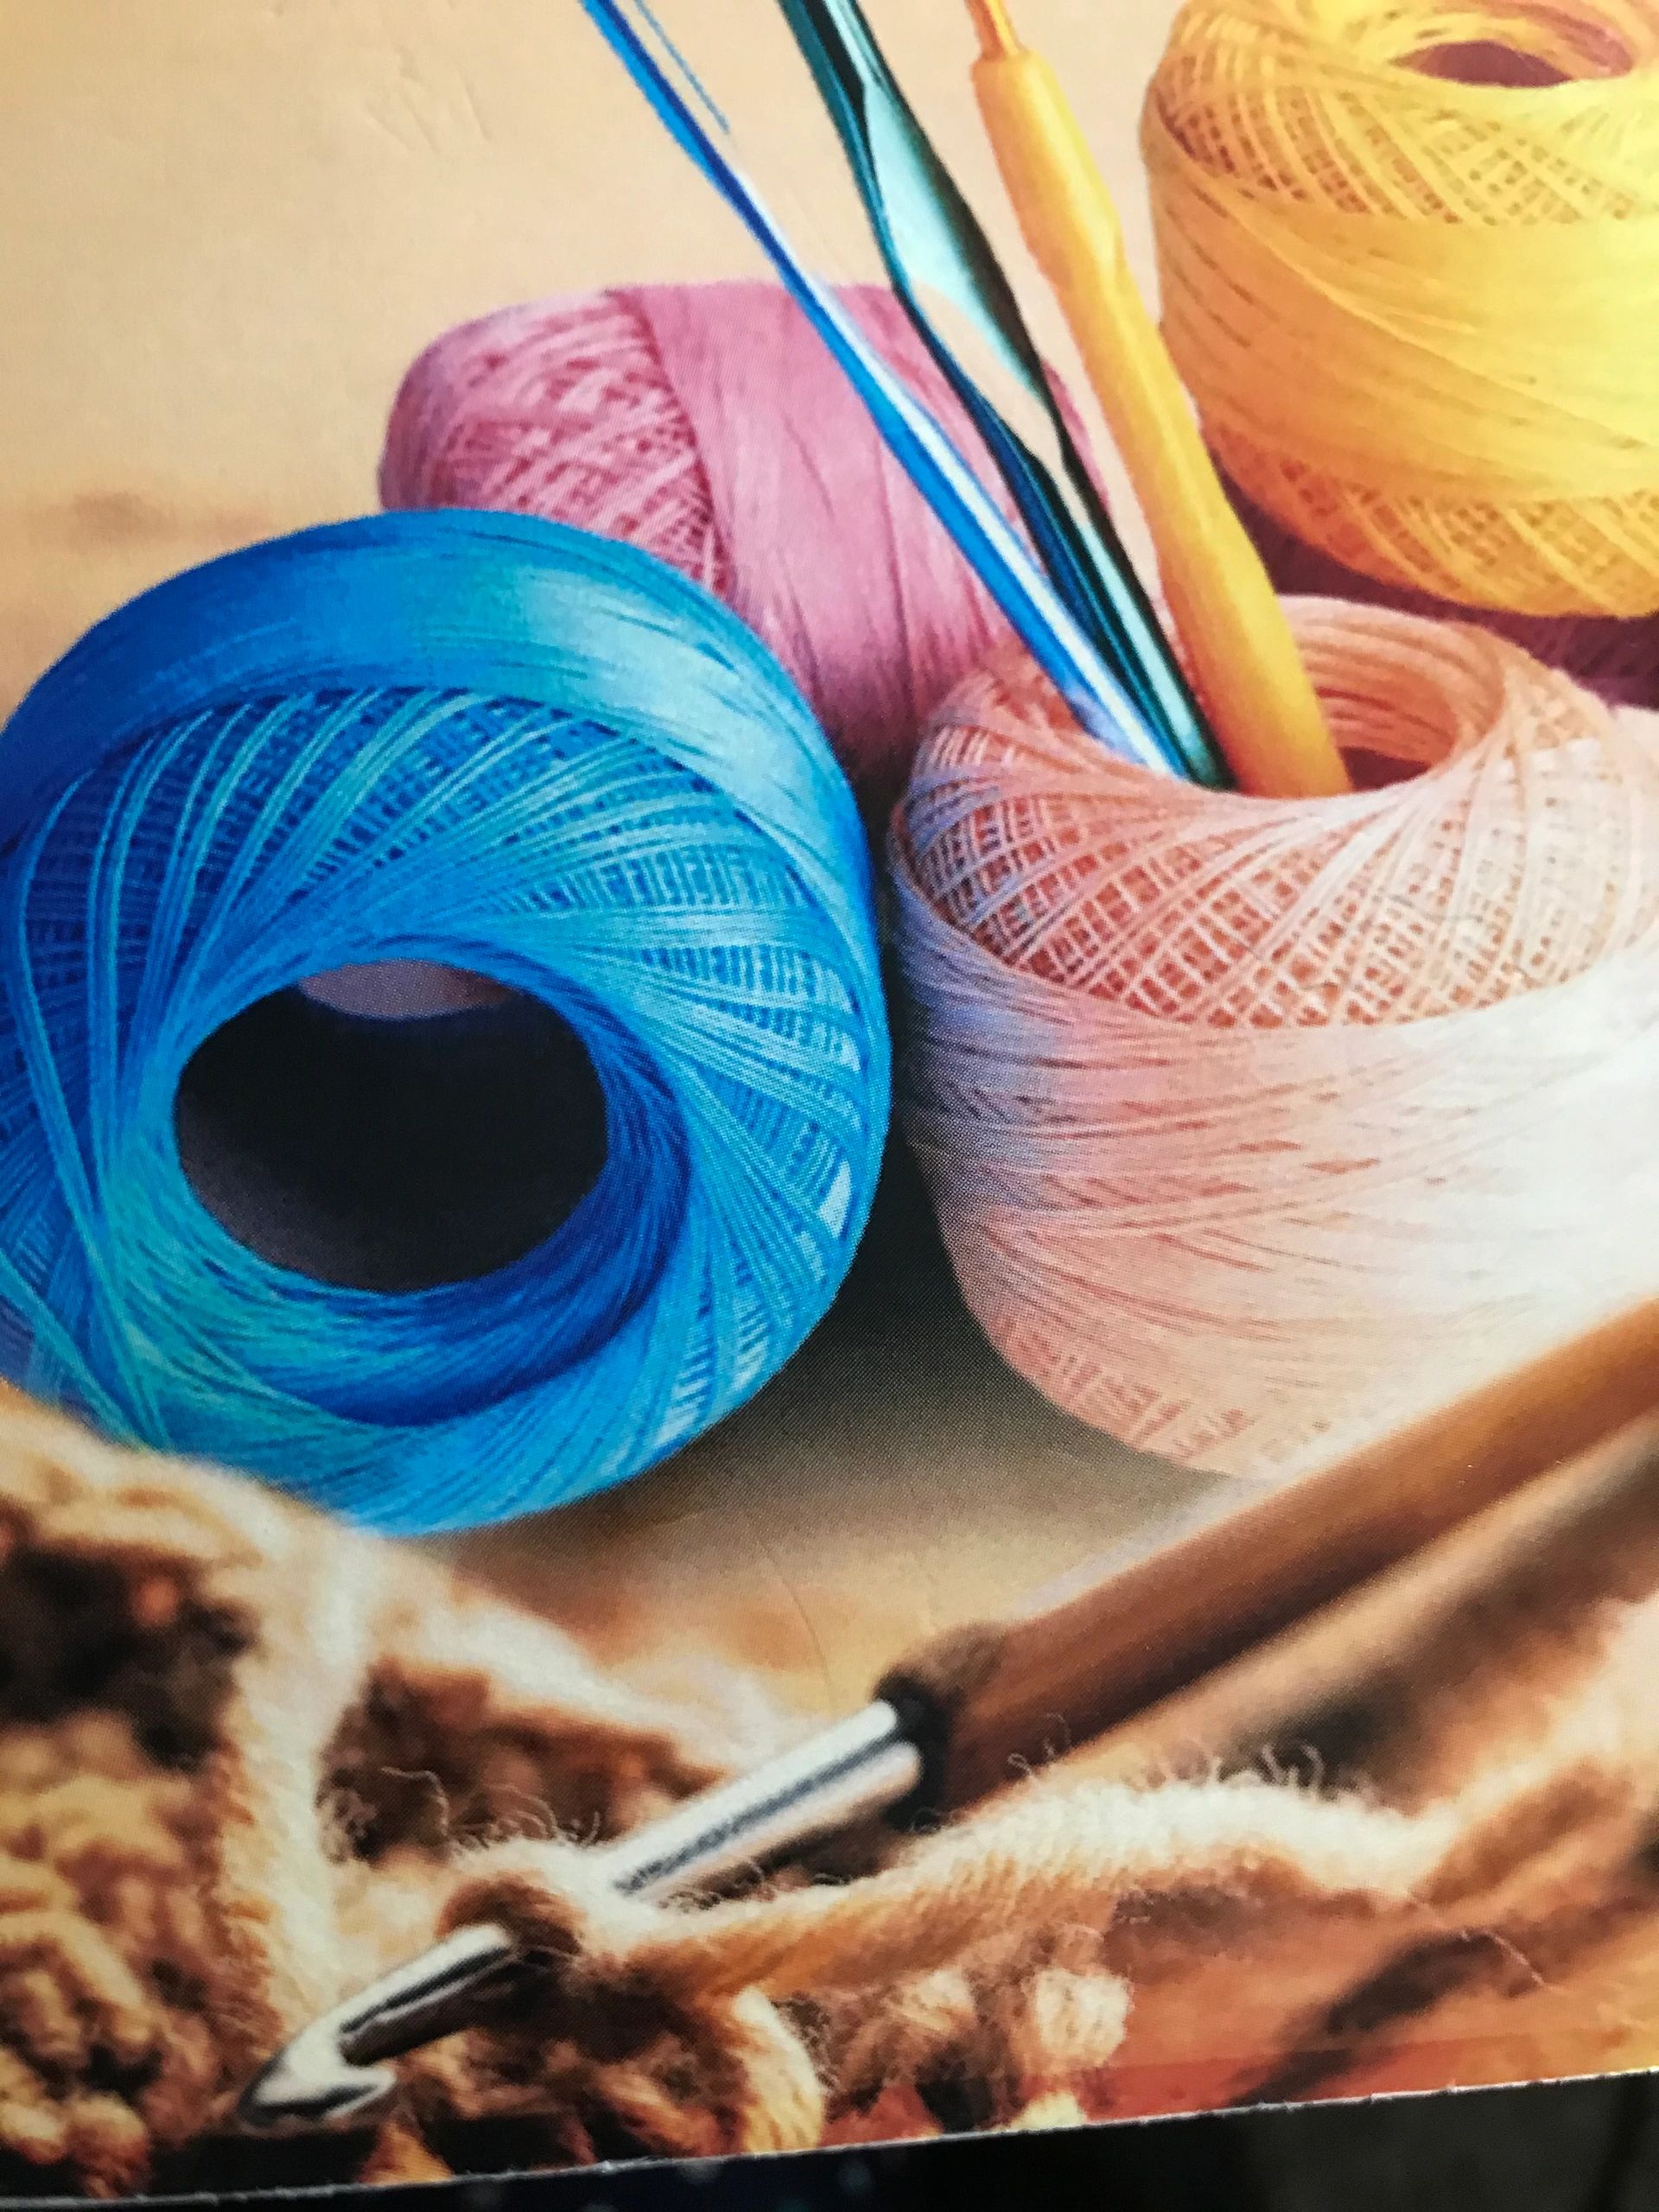 Crochet For Beginners - Handmade Crochet Items, Beginner Kits, Books